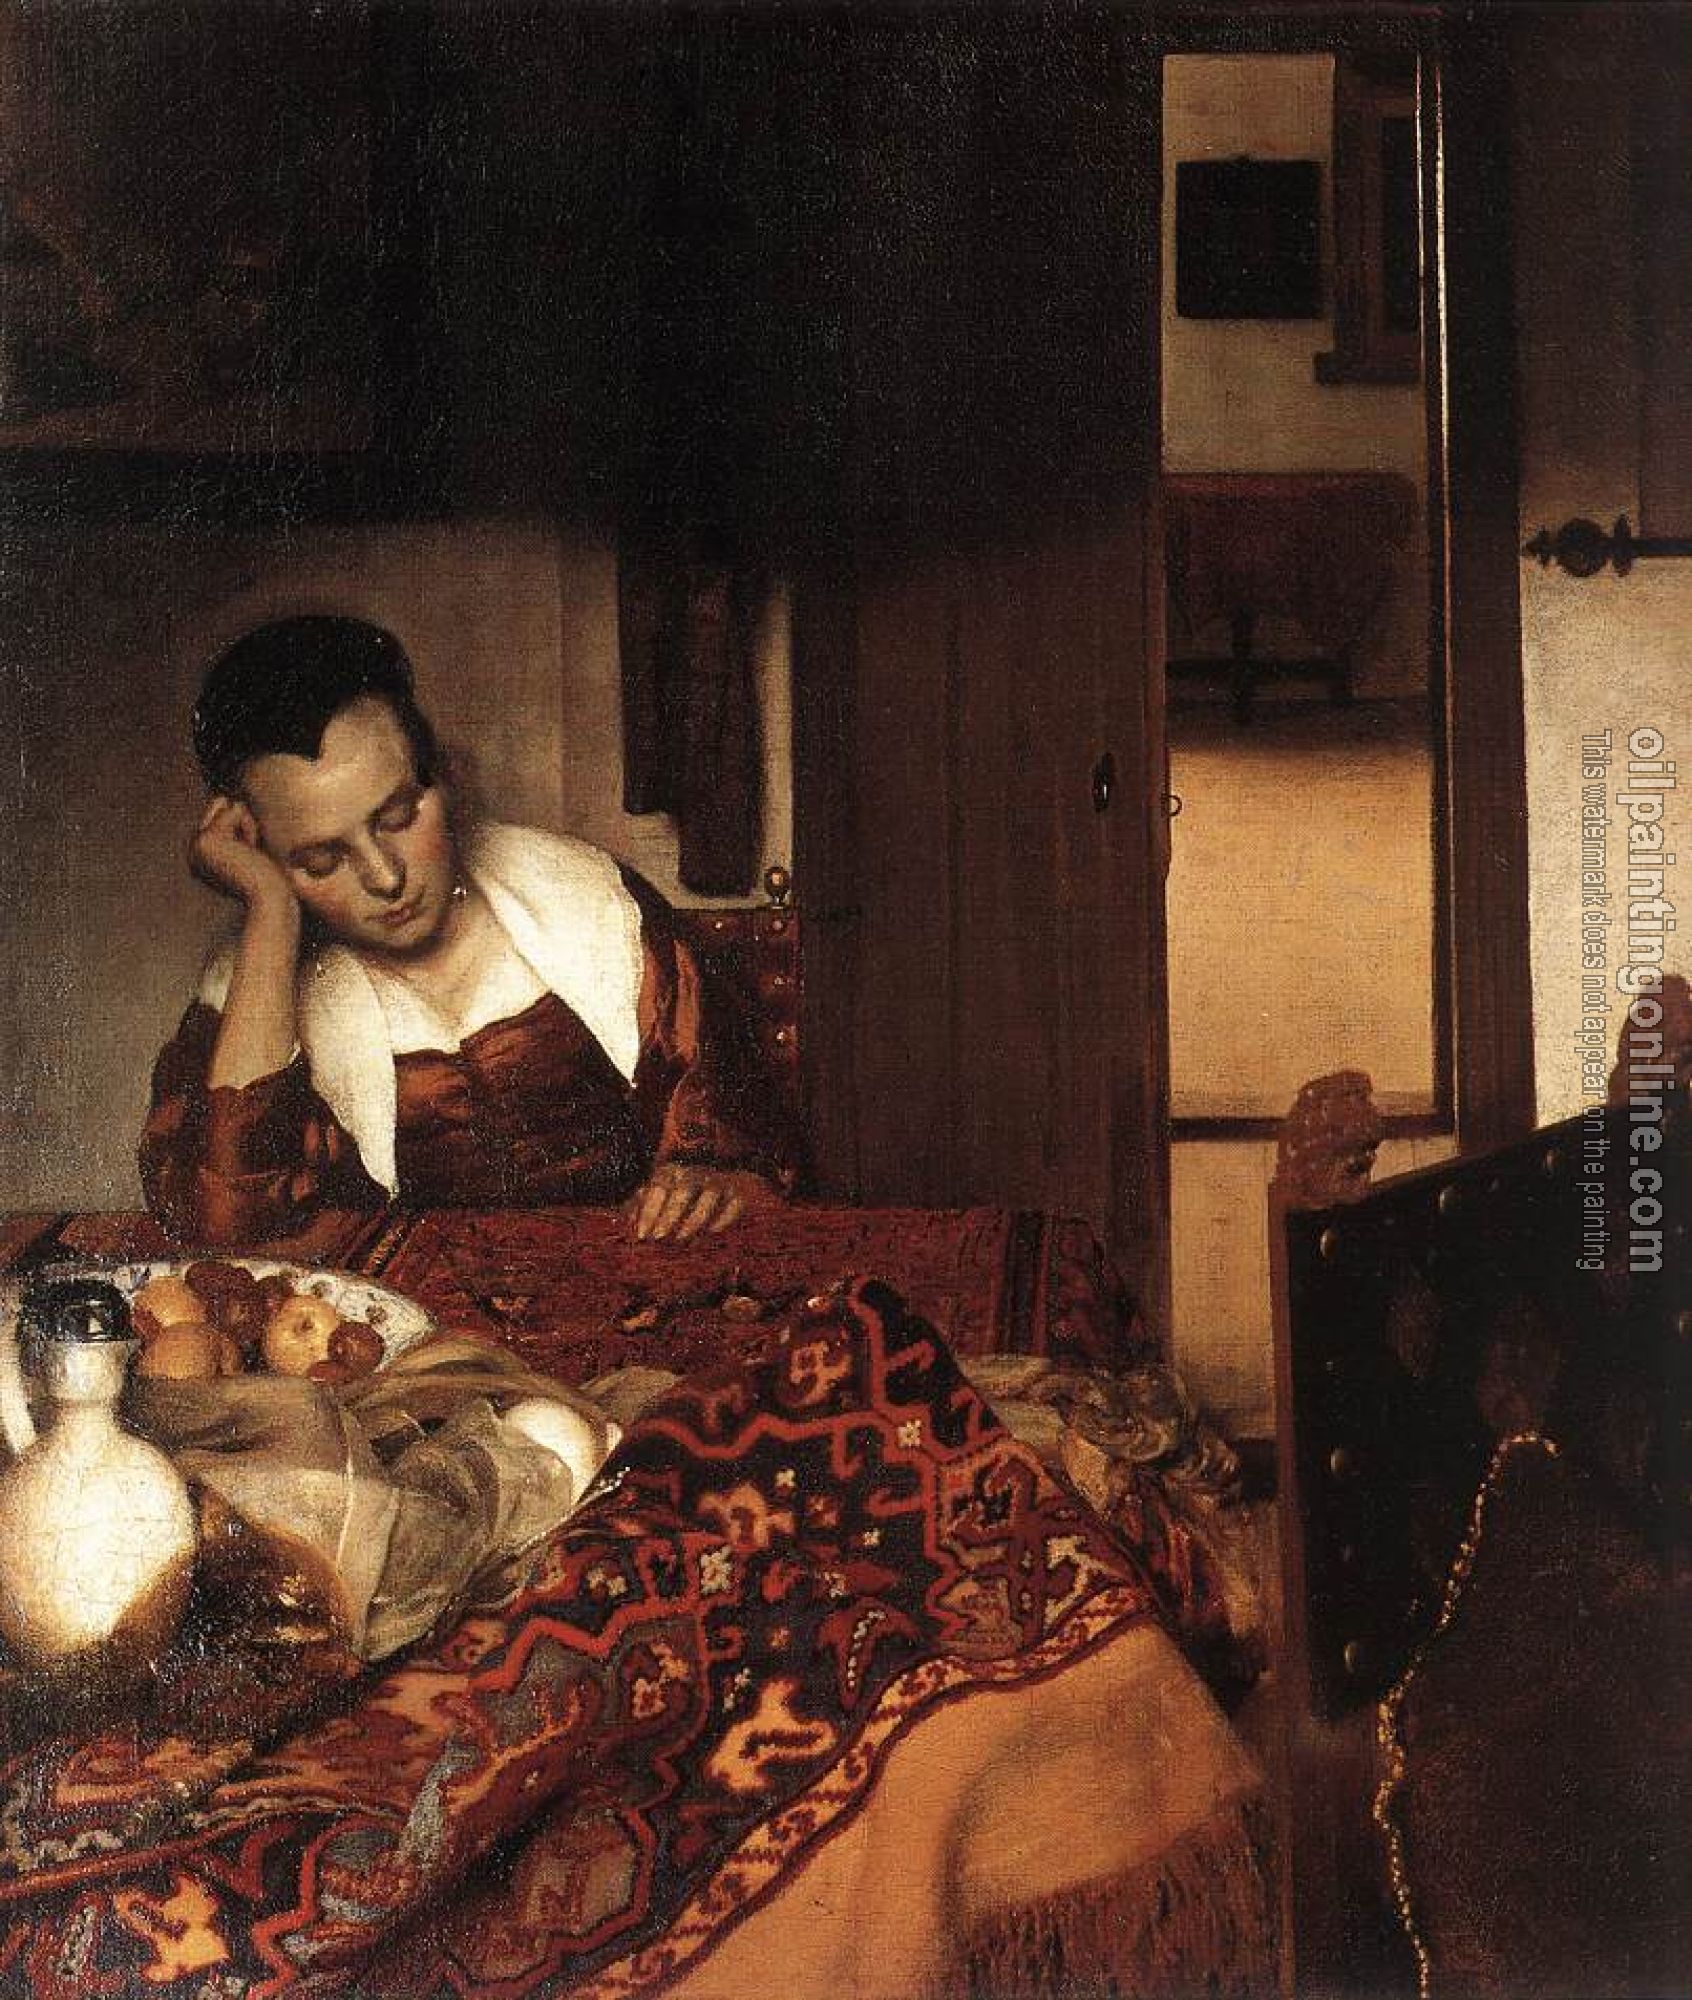 Vermeer, Jan - A Woman Asleep at Table